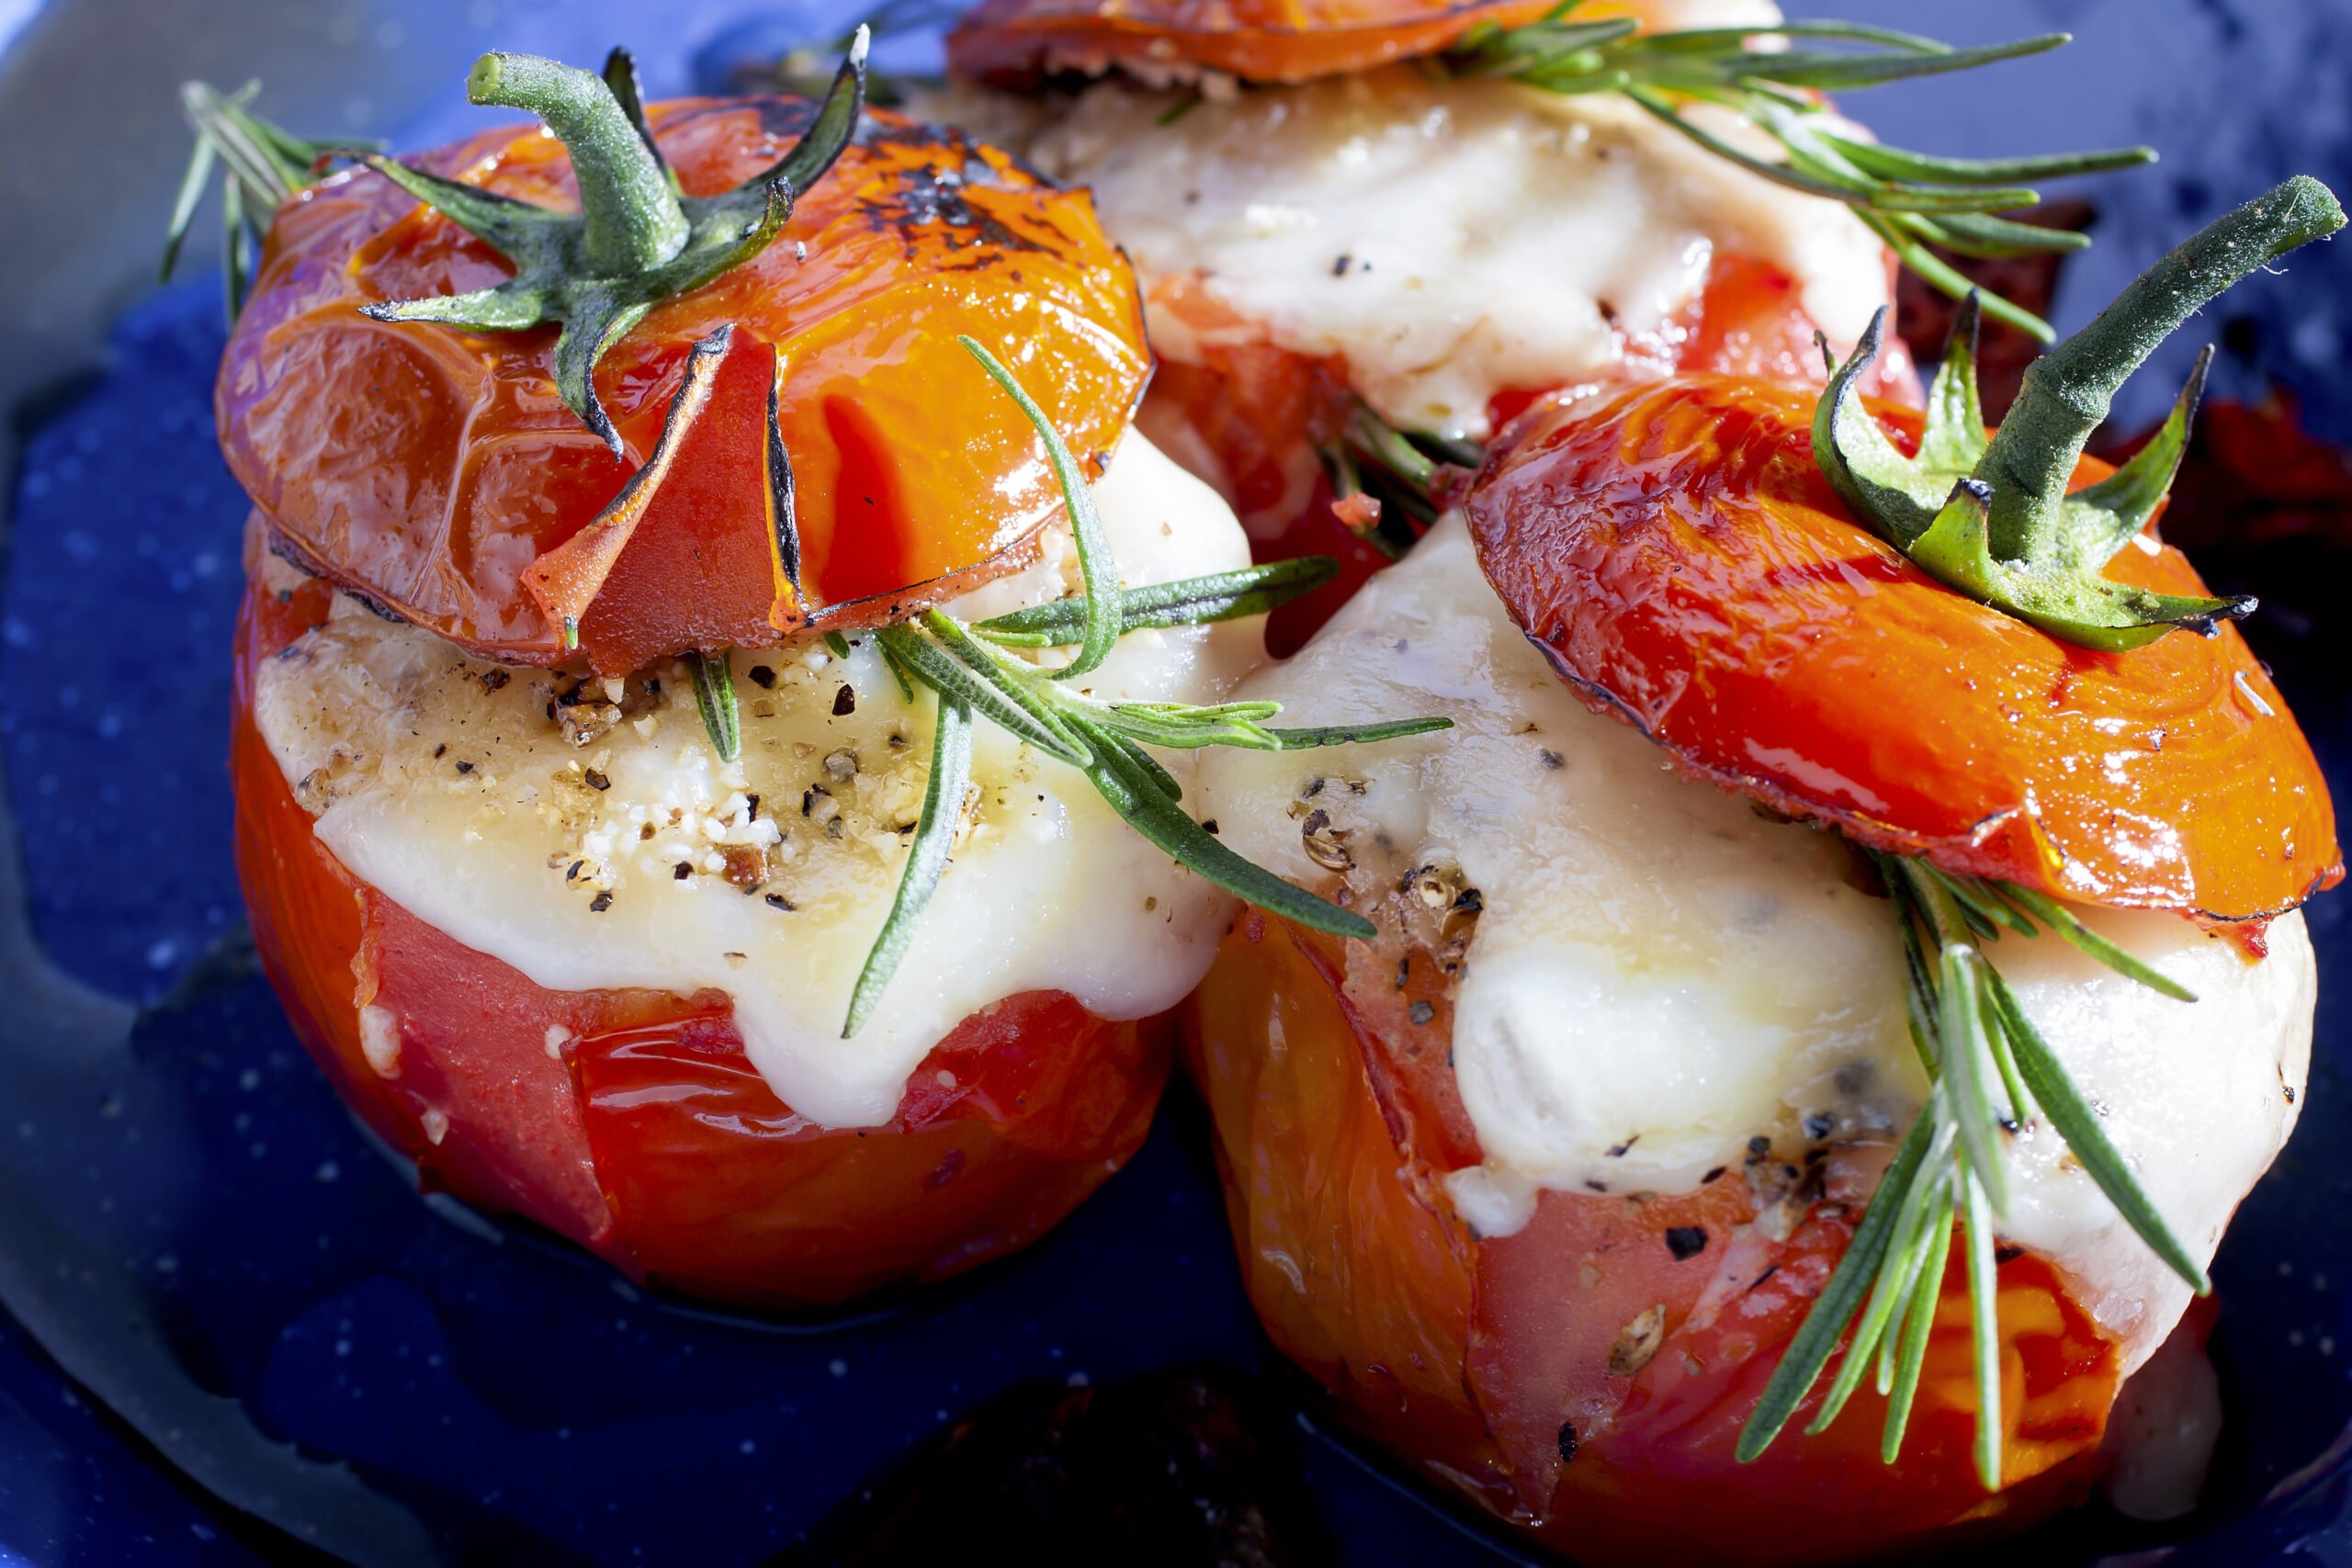 Фаршированные помидоры в духовке с мясным фаршем — ТОП-7 рецептов